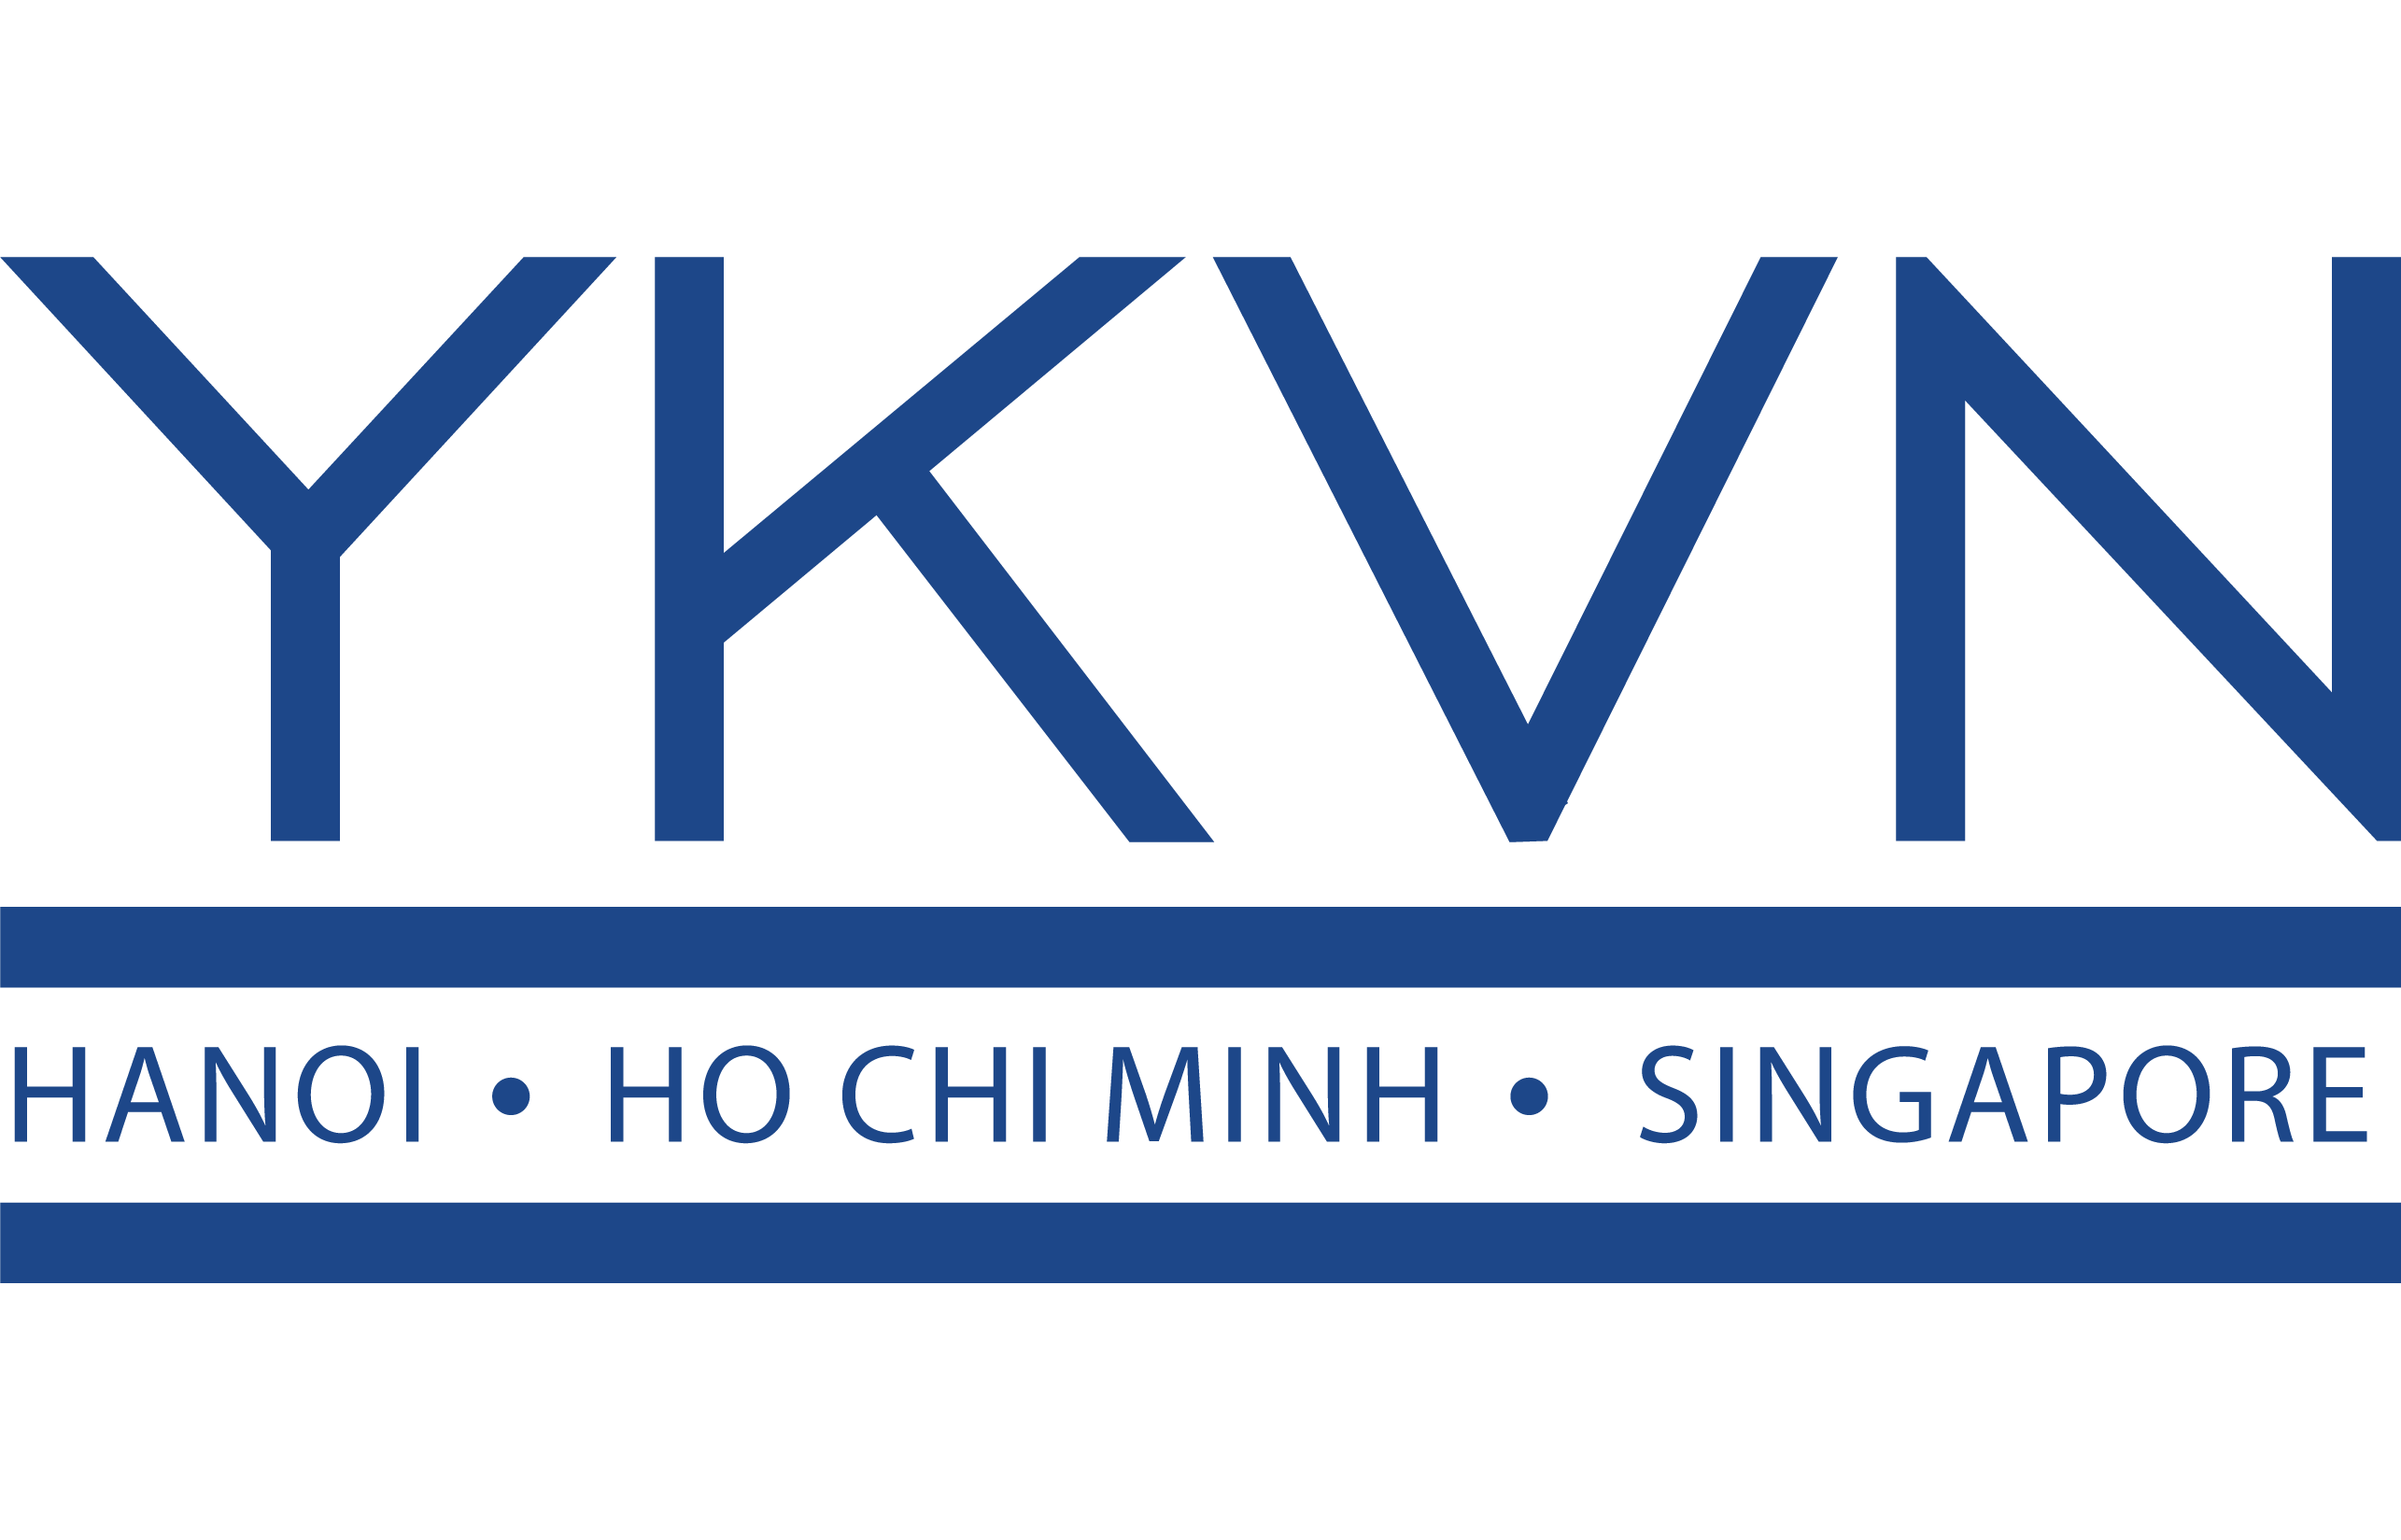 YKVN logo